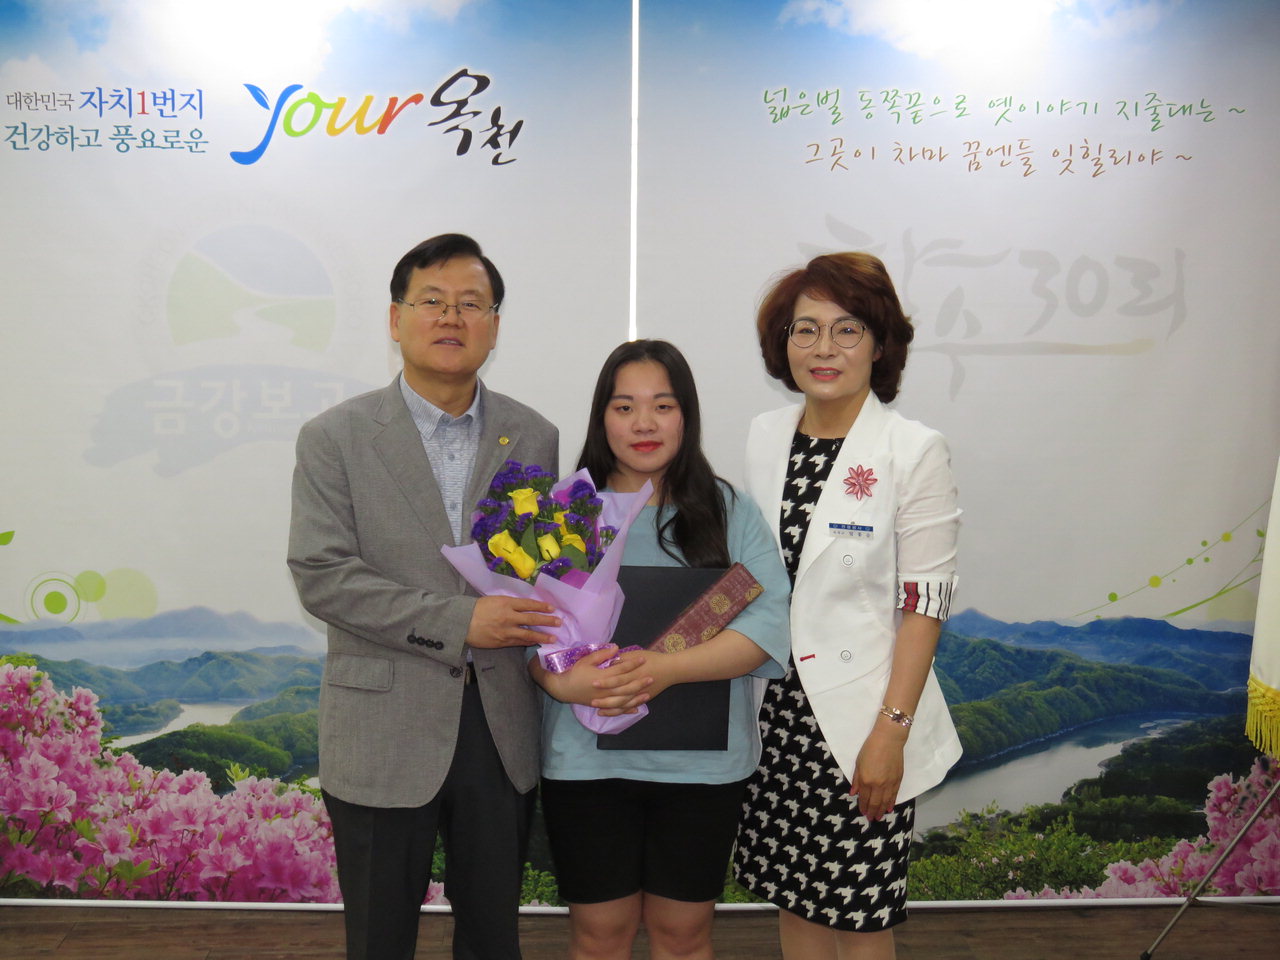 옥천군 청산면 신매리에 거주하는 박혜영 양(18)이 여성가족부가 선정한 2018년 청소년 육성 유공 표창대상자로 선정돼 여성가족부장관상을 받았다.